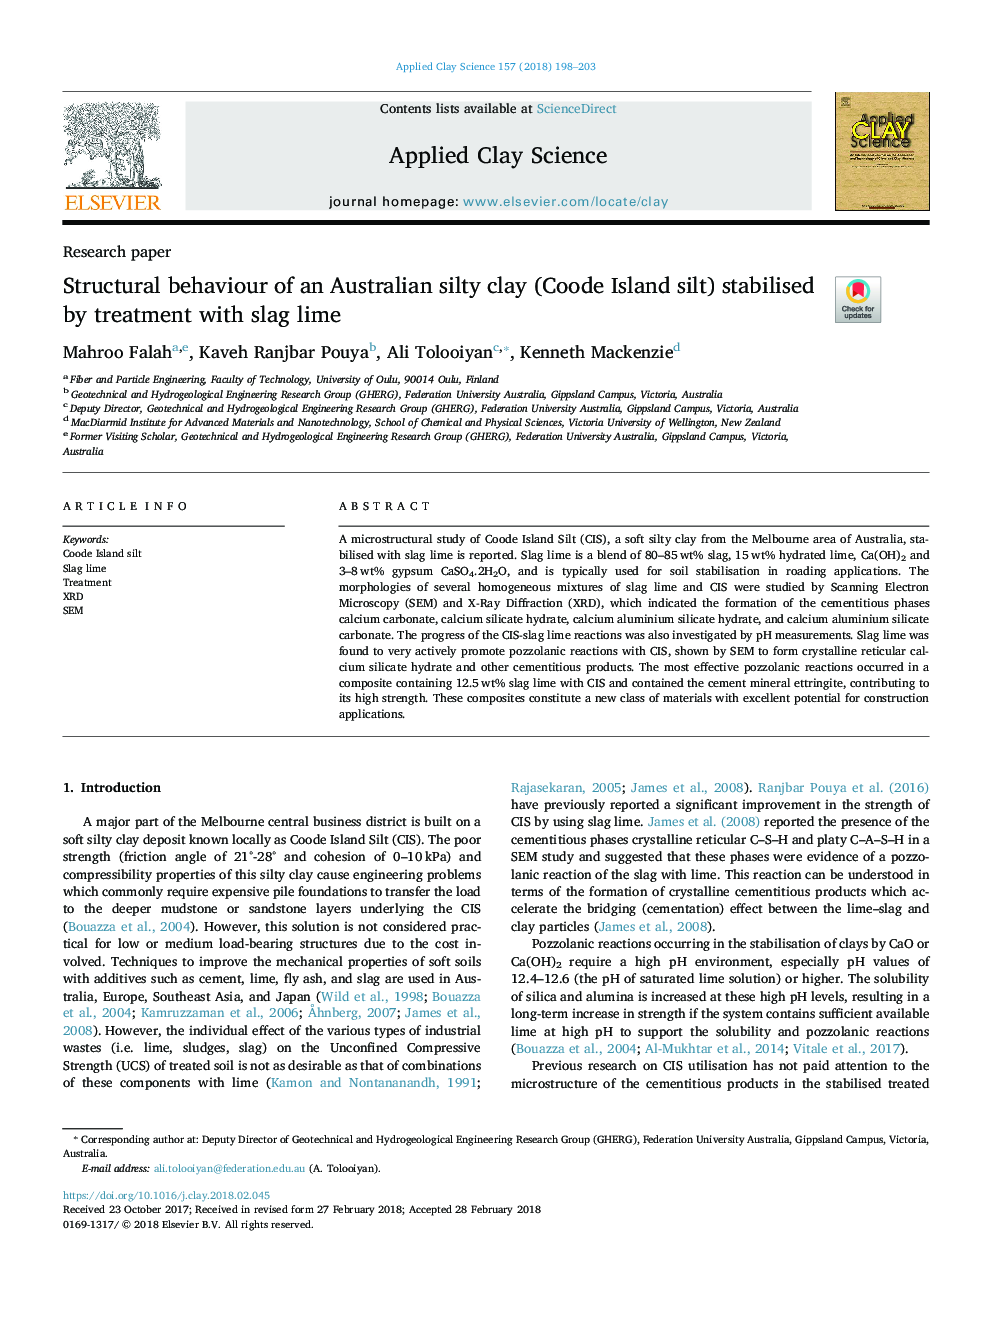 رفتار ساختاری یک خاکستری سیلتی استرالیا (نمک جزیره کود) با درمان با آهک تثبیت شده است 